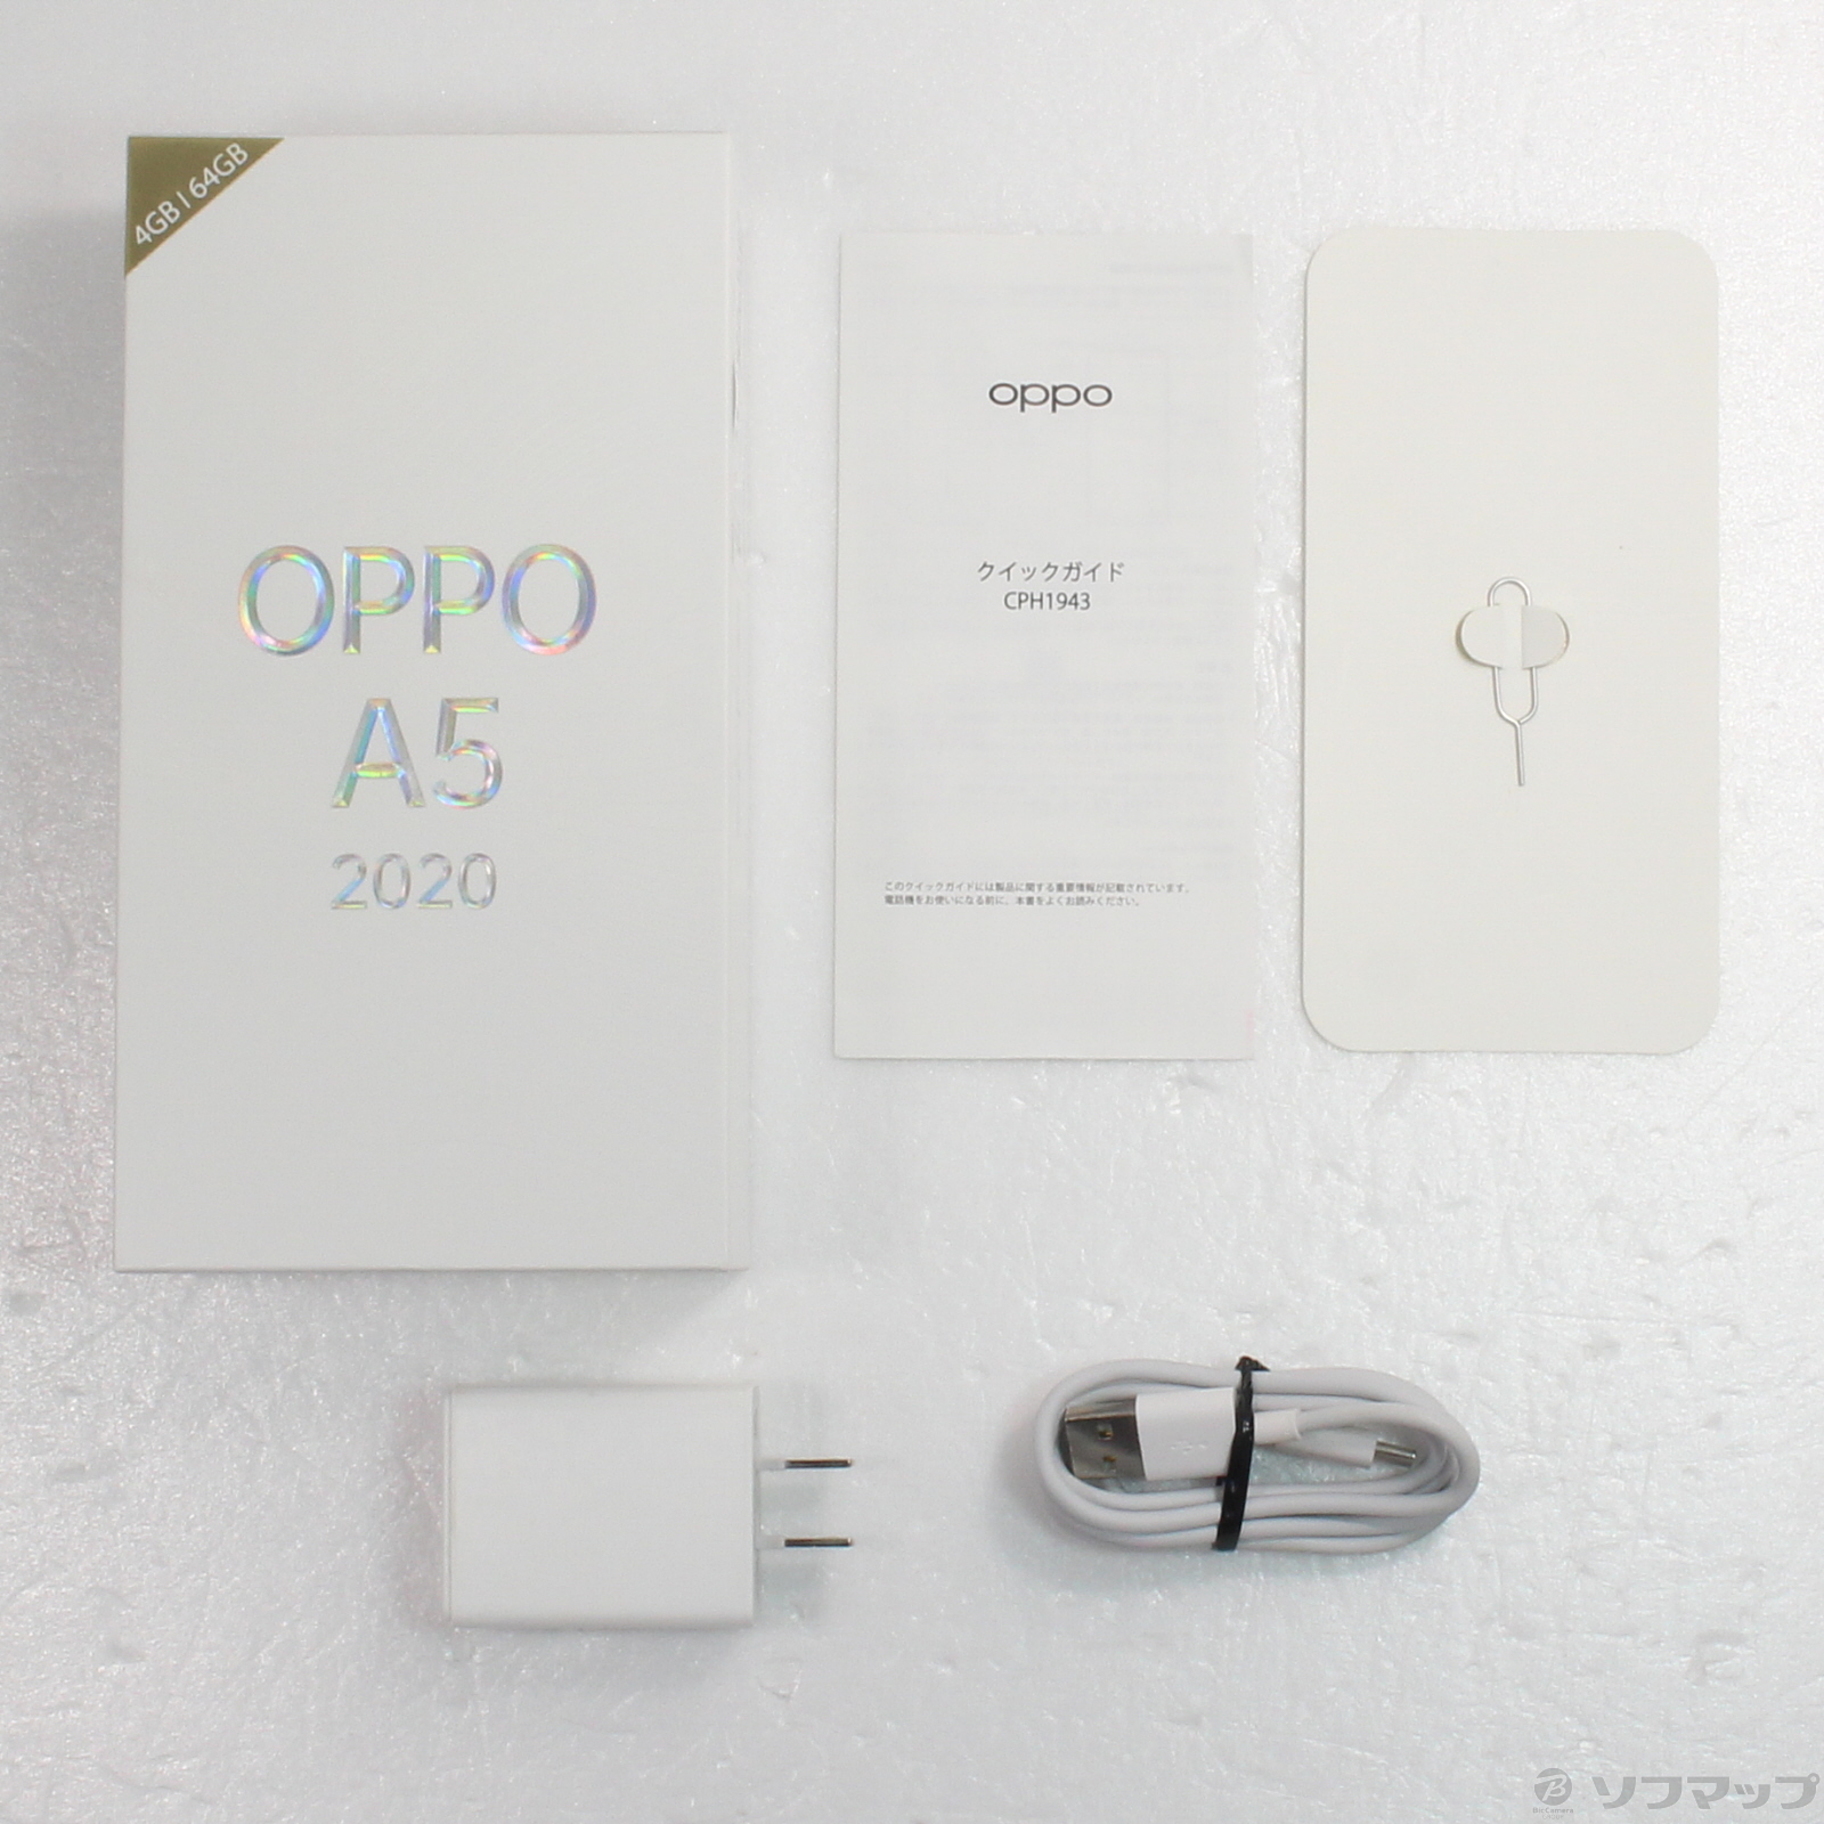 【新品未開封】Oppo A5 2020  (Green) 4GB / 64GB